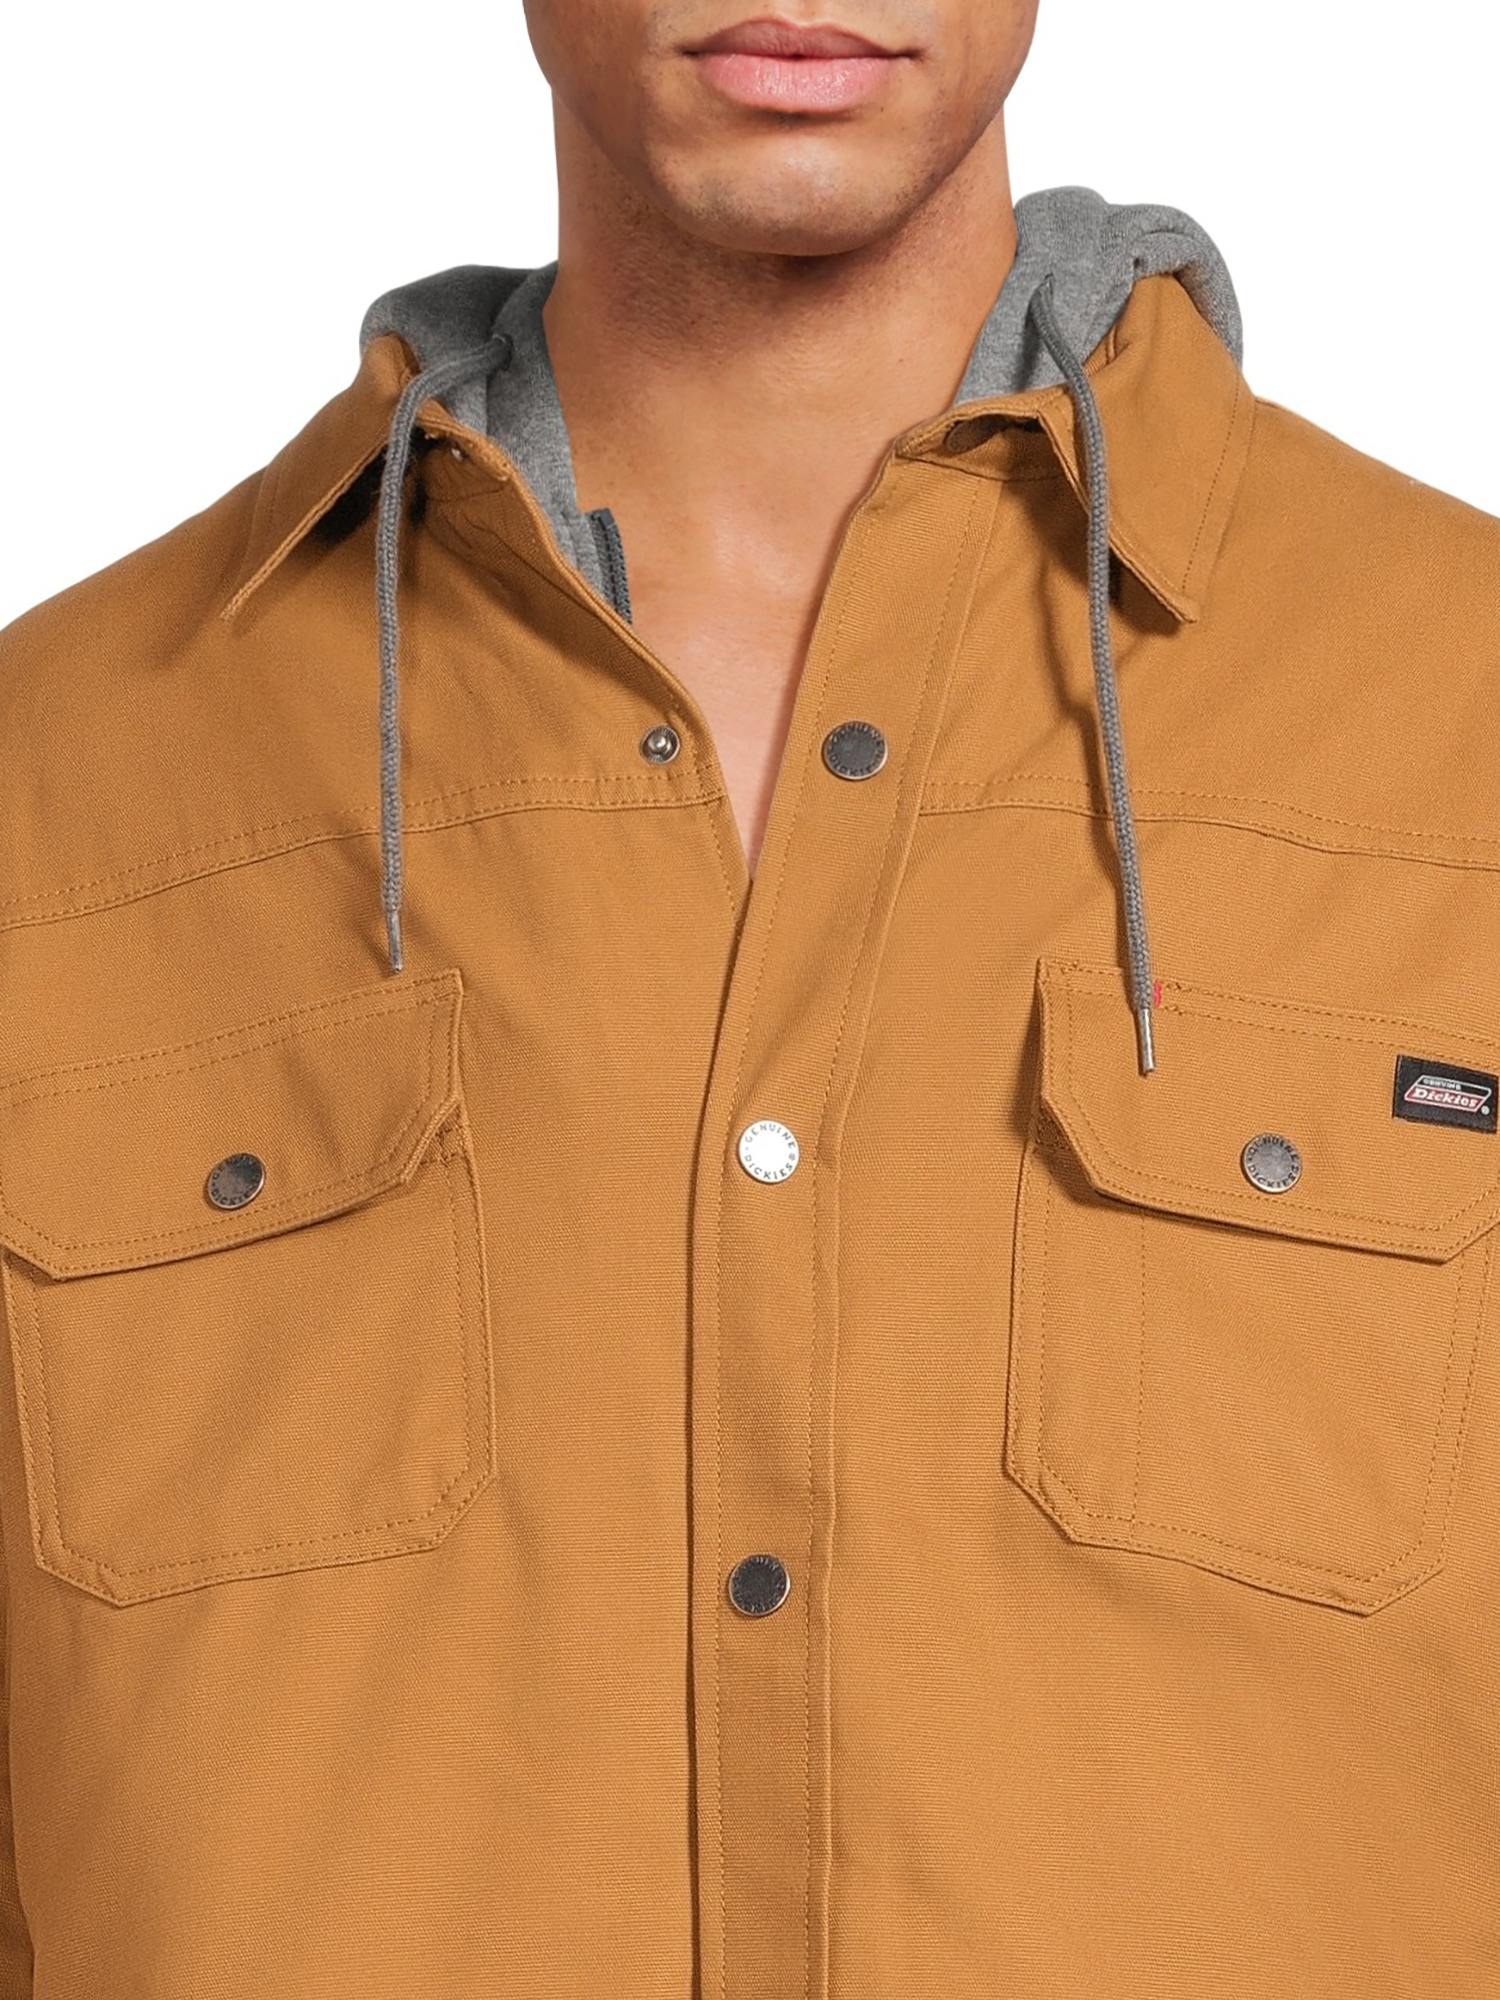 Genuine Dickies Men's Canvas Hooded Shirt Jacket - image 3 of 5